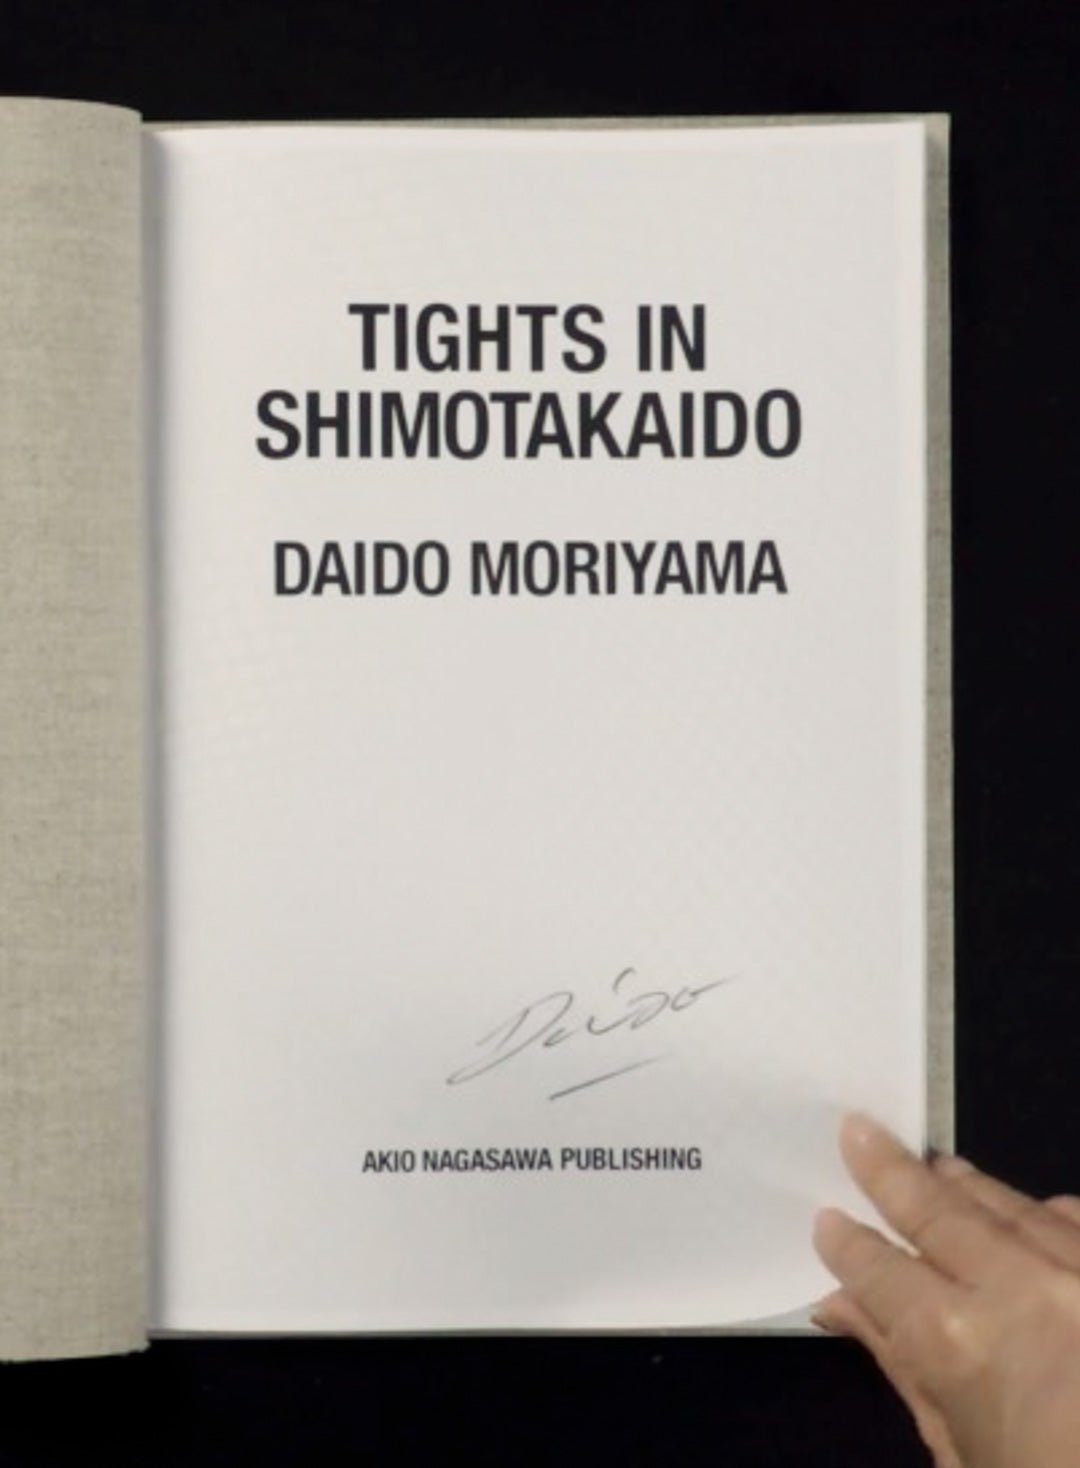 Tights in Shimotakaido by Daido Moriyama - Tipi bookshop